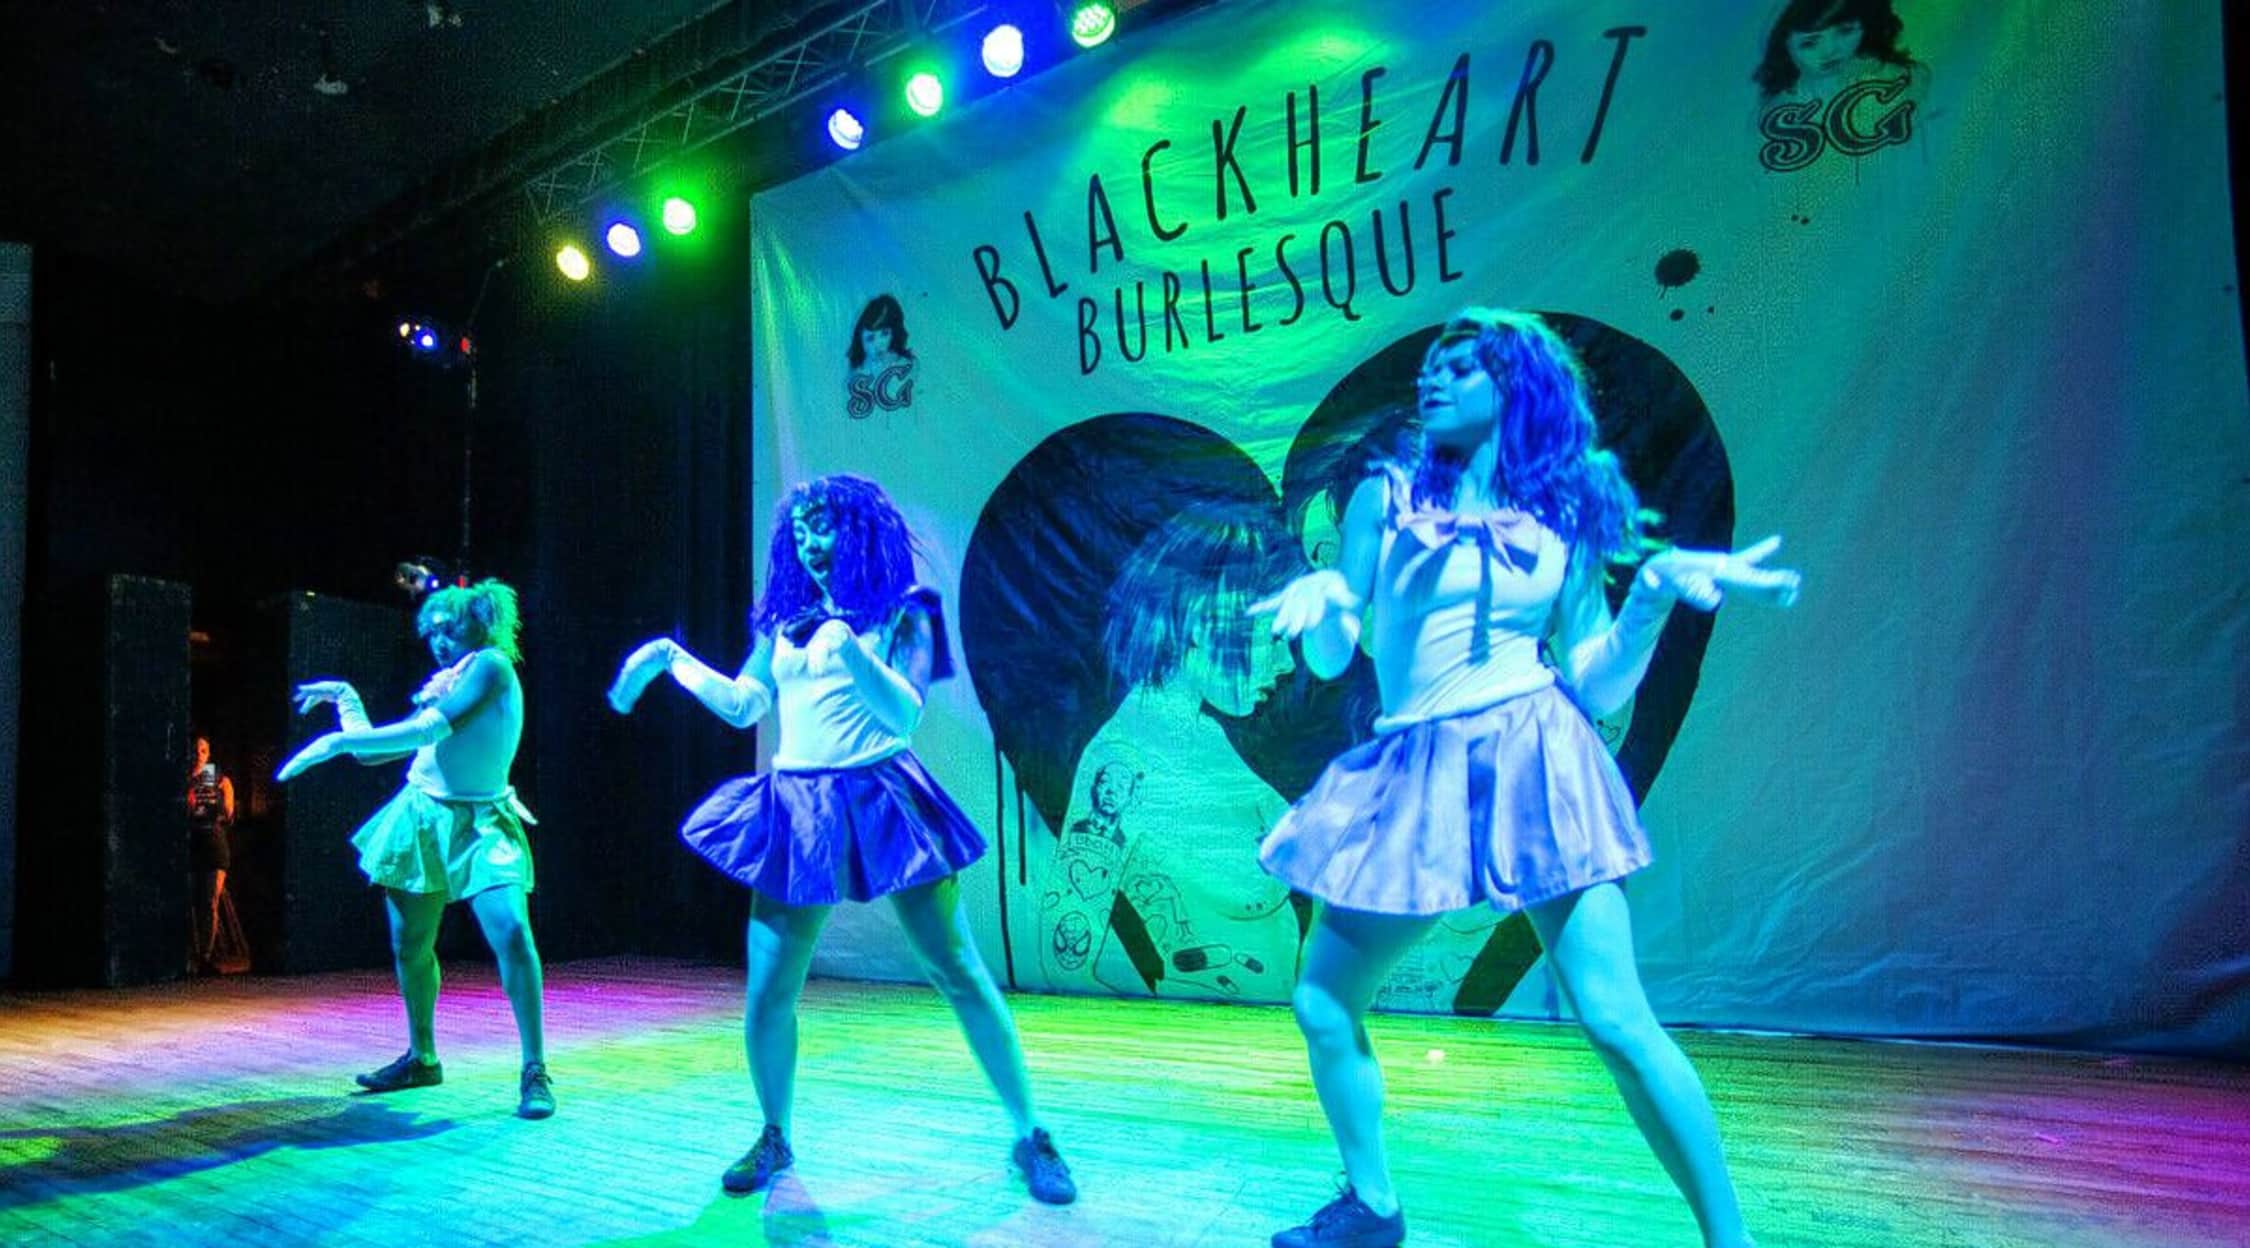 Suicidegirls: blackheart burlesque the The SuicideGirls